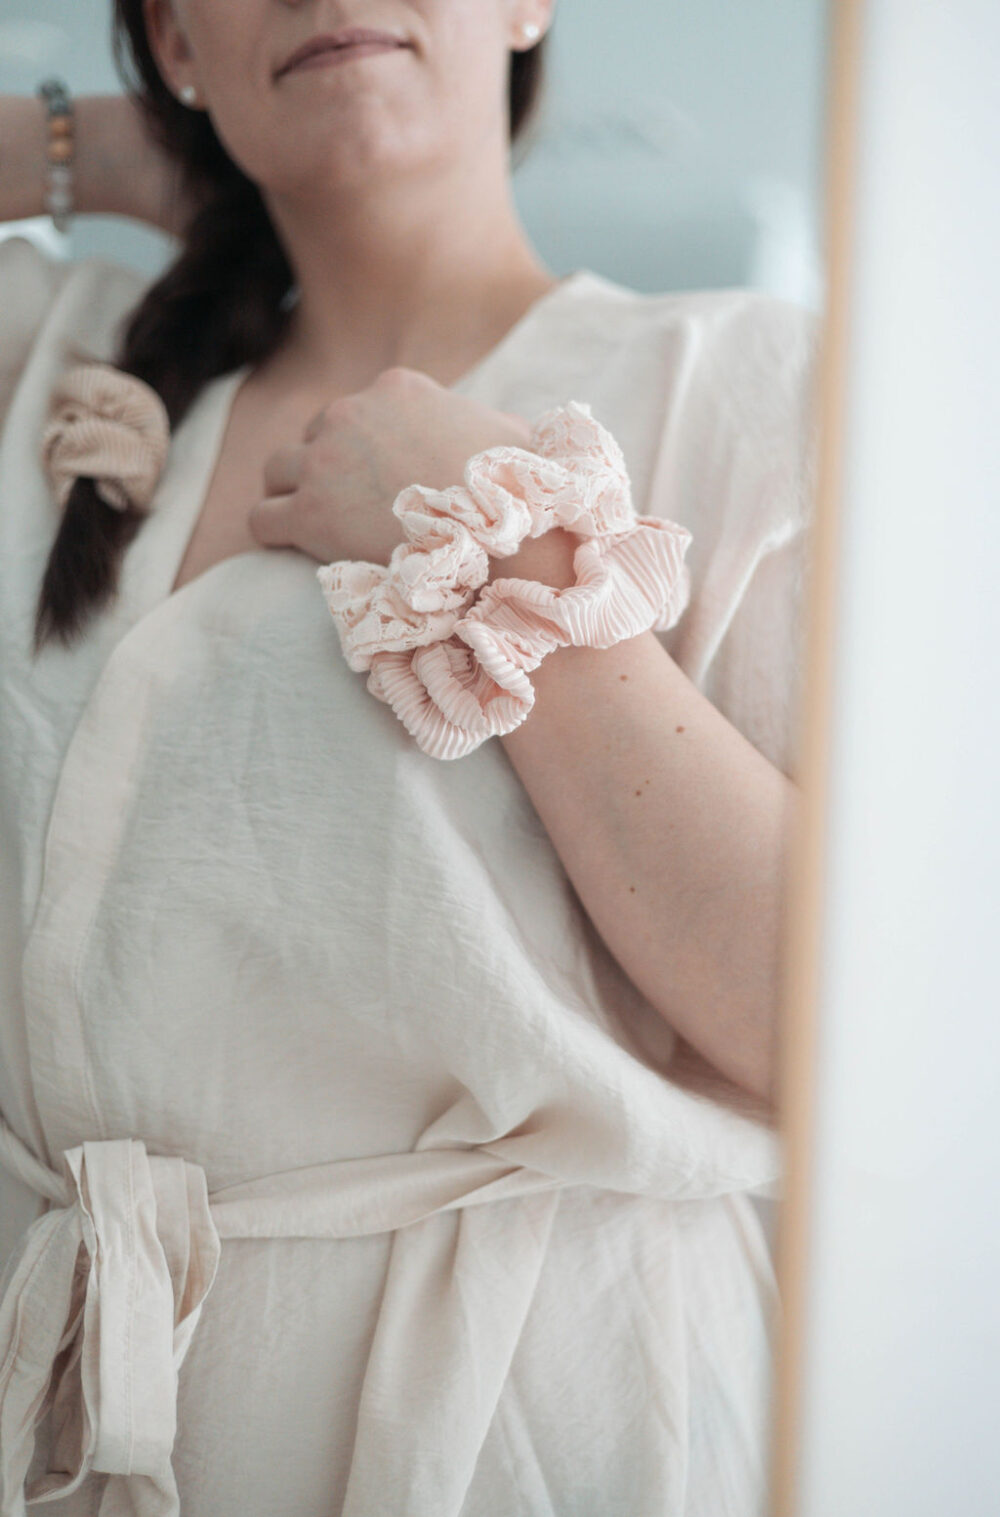 Nainen valkoinen mekko päällään katsoo itseään peilistä. Naisen käsi on hänen rinnuksellaan, ranteessa on kaksi vaalean roosan väristä hiusdonitsia.